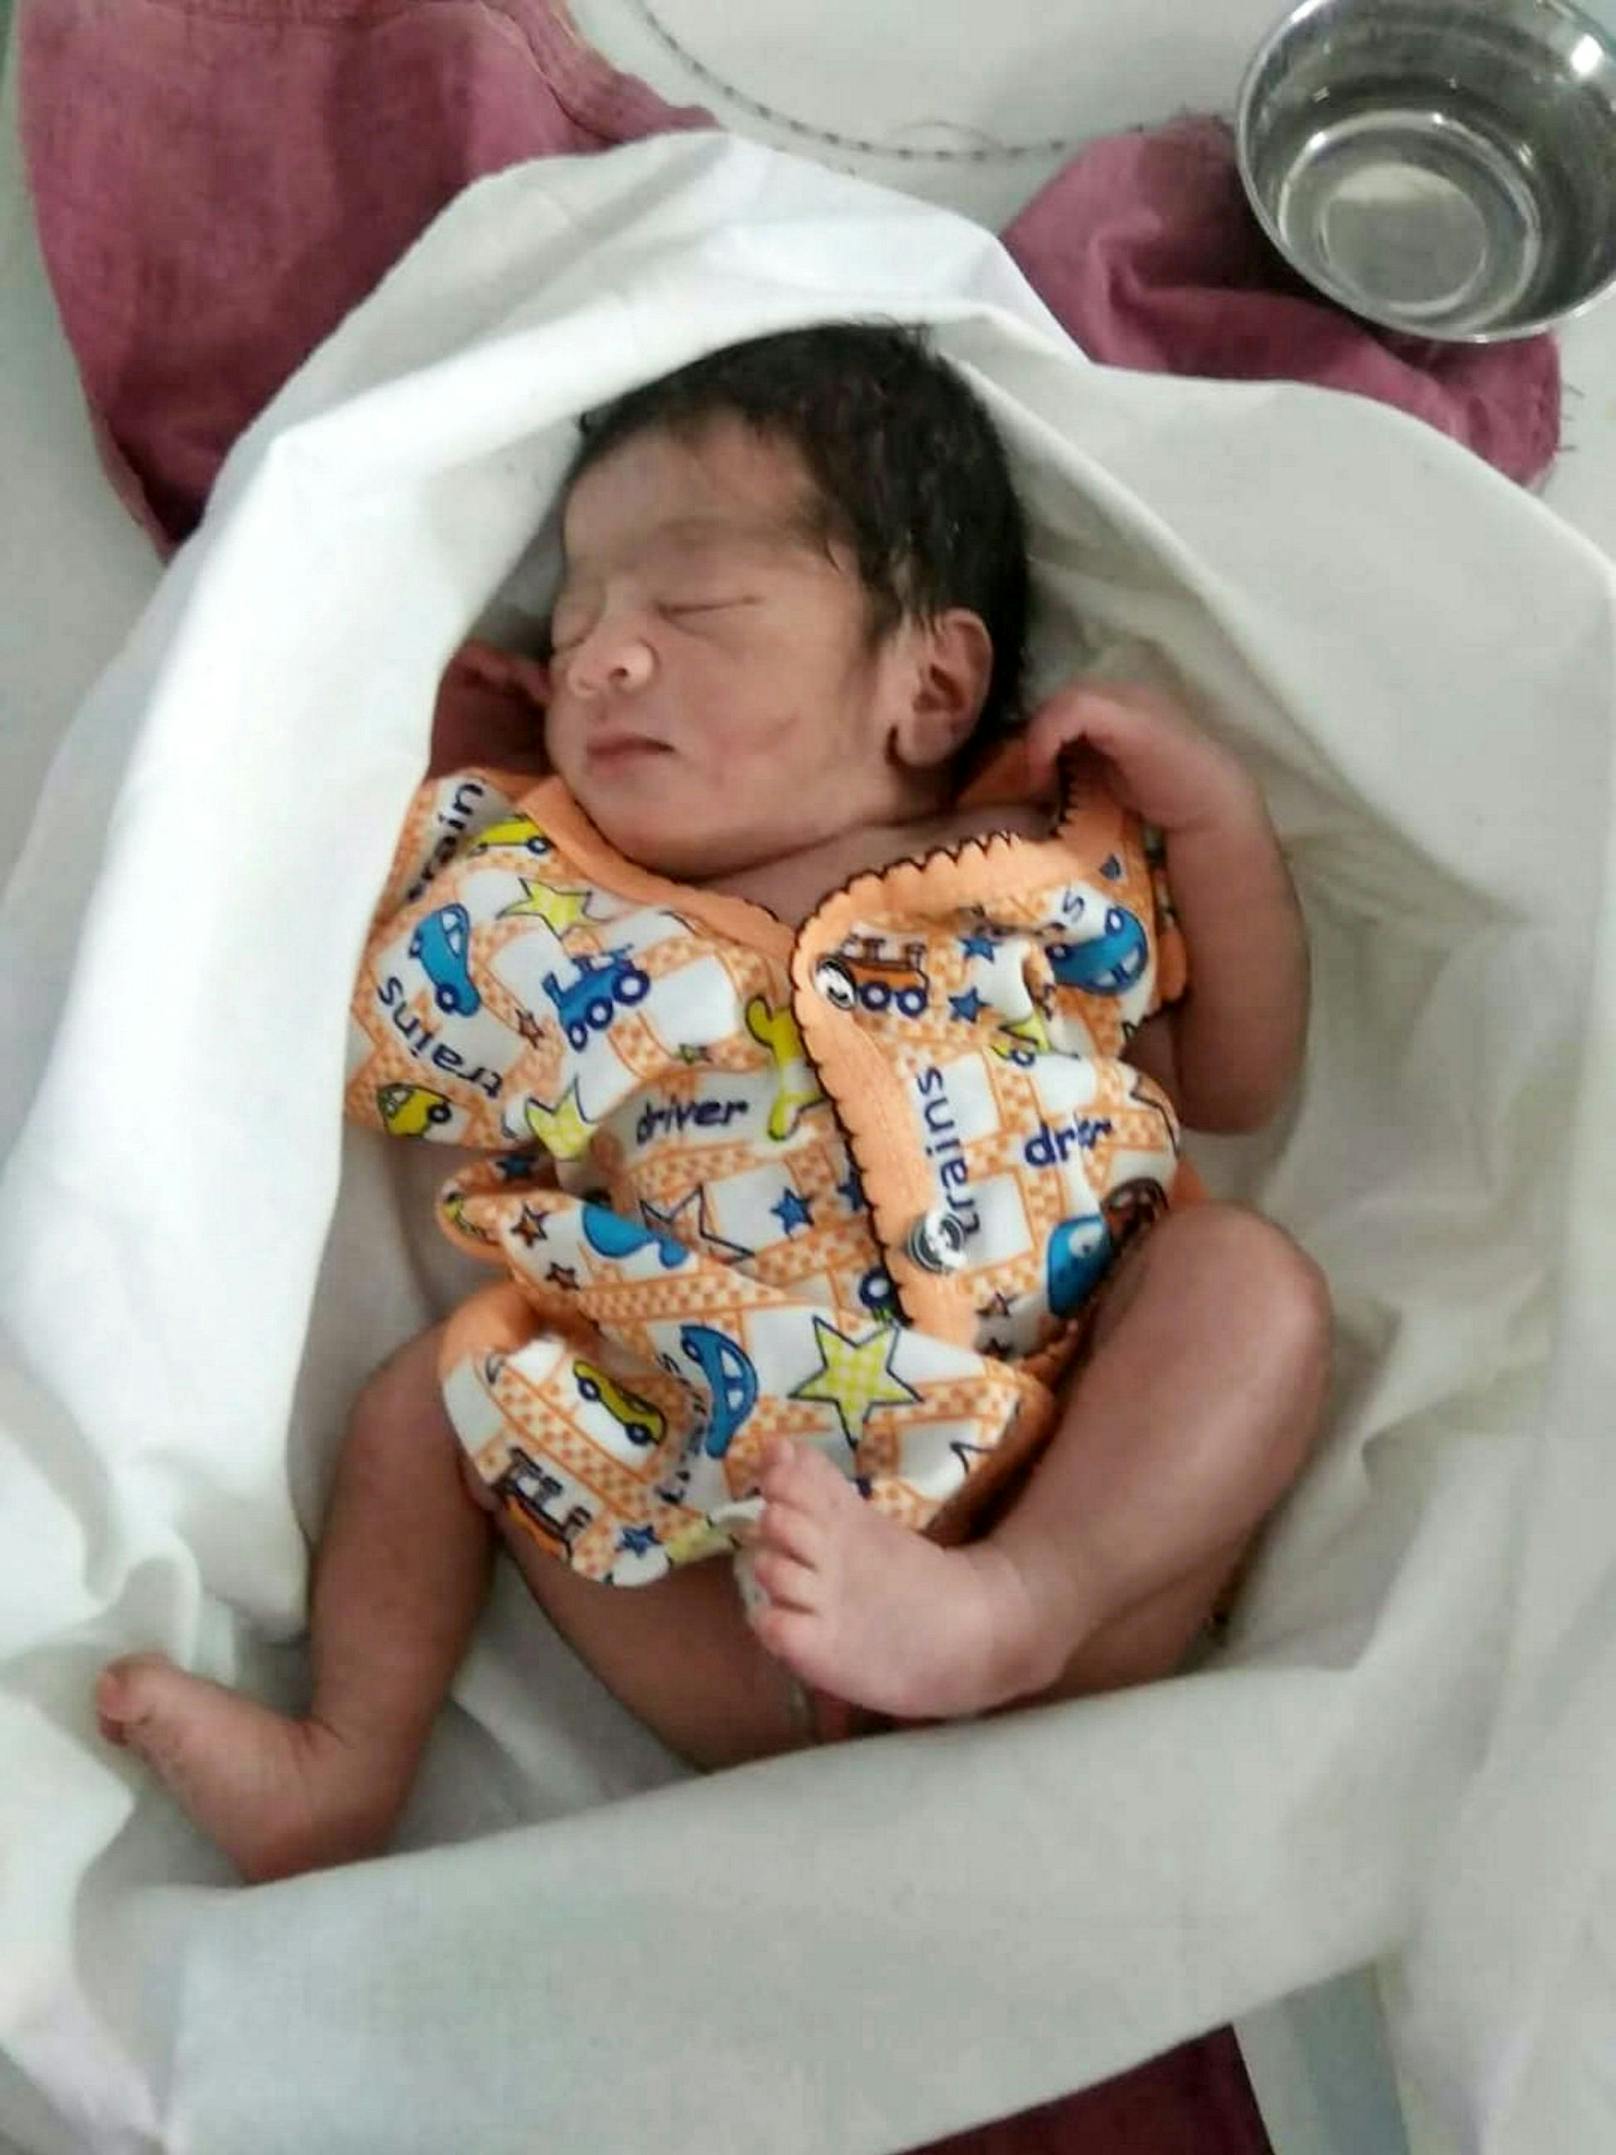 Das Baby wurde auch an das Child Line Project überwiesen, nachdem es von Ärzten in einem örtlichen Krankenhaus untersucht worden war.